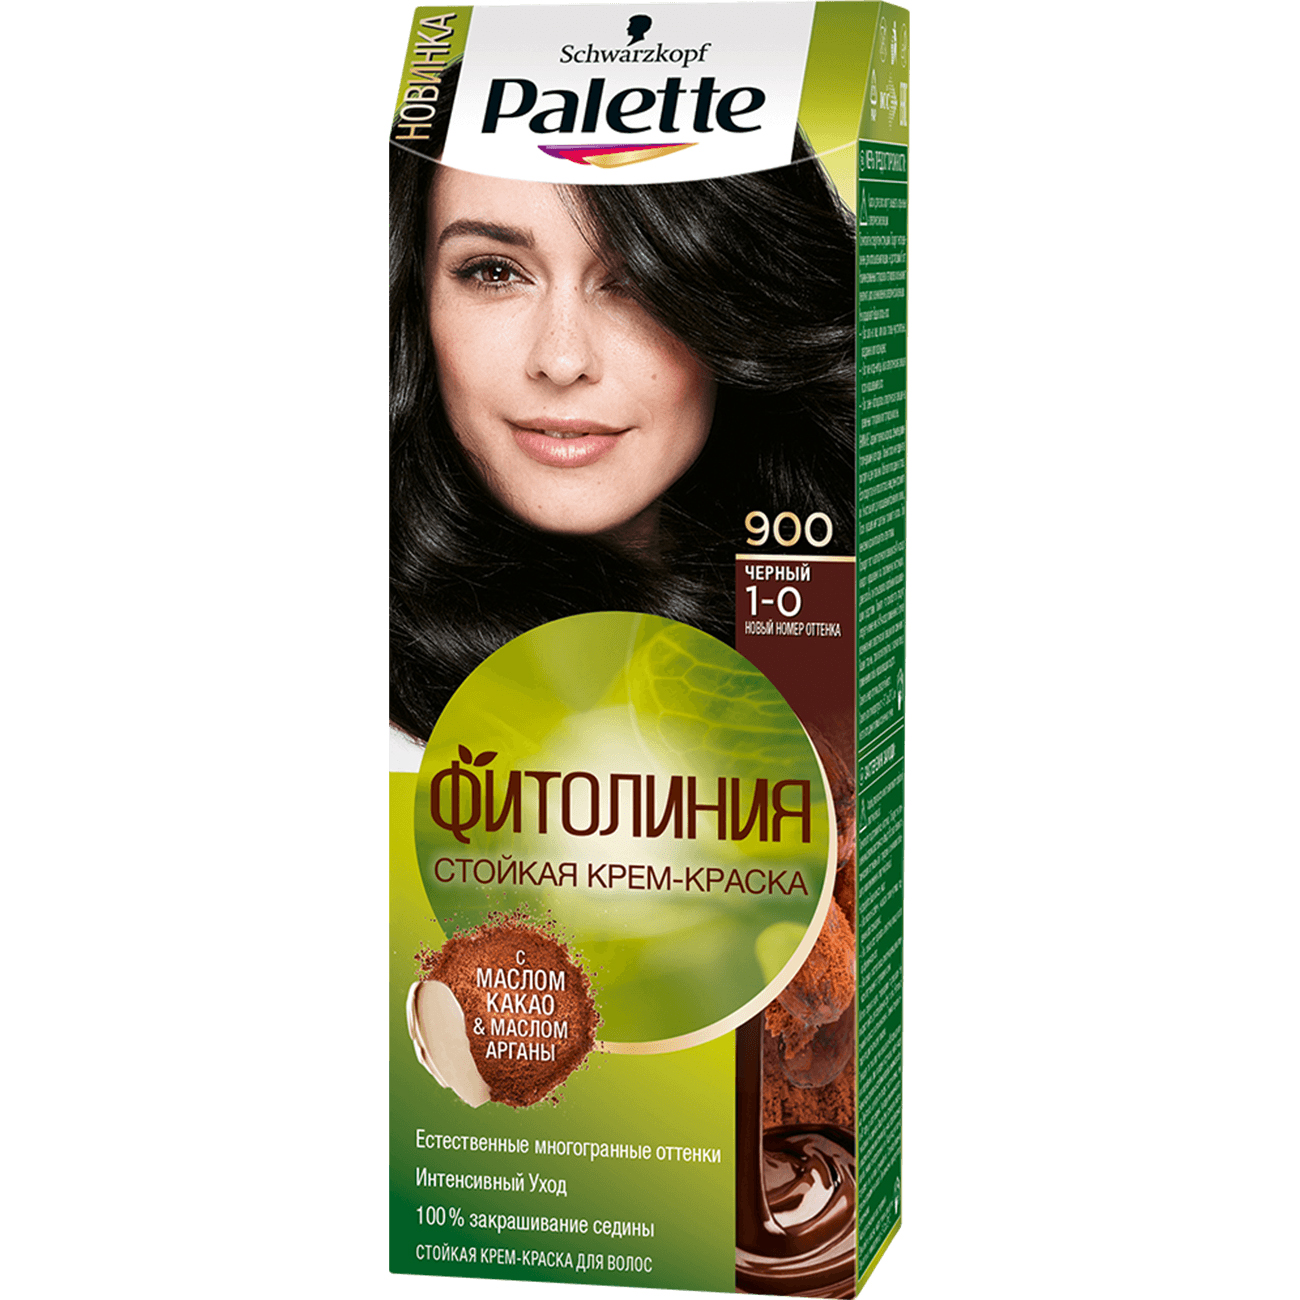 Крем-краска для волос Palette Фитолиния 1-0, 900 Черный 110 мл краска для волос palette naturia 4 60 золотистый каштан